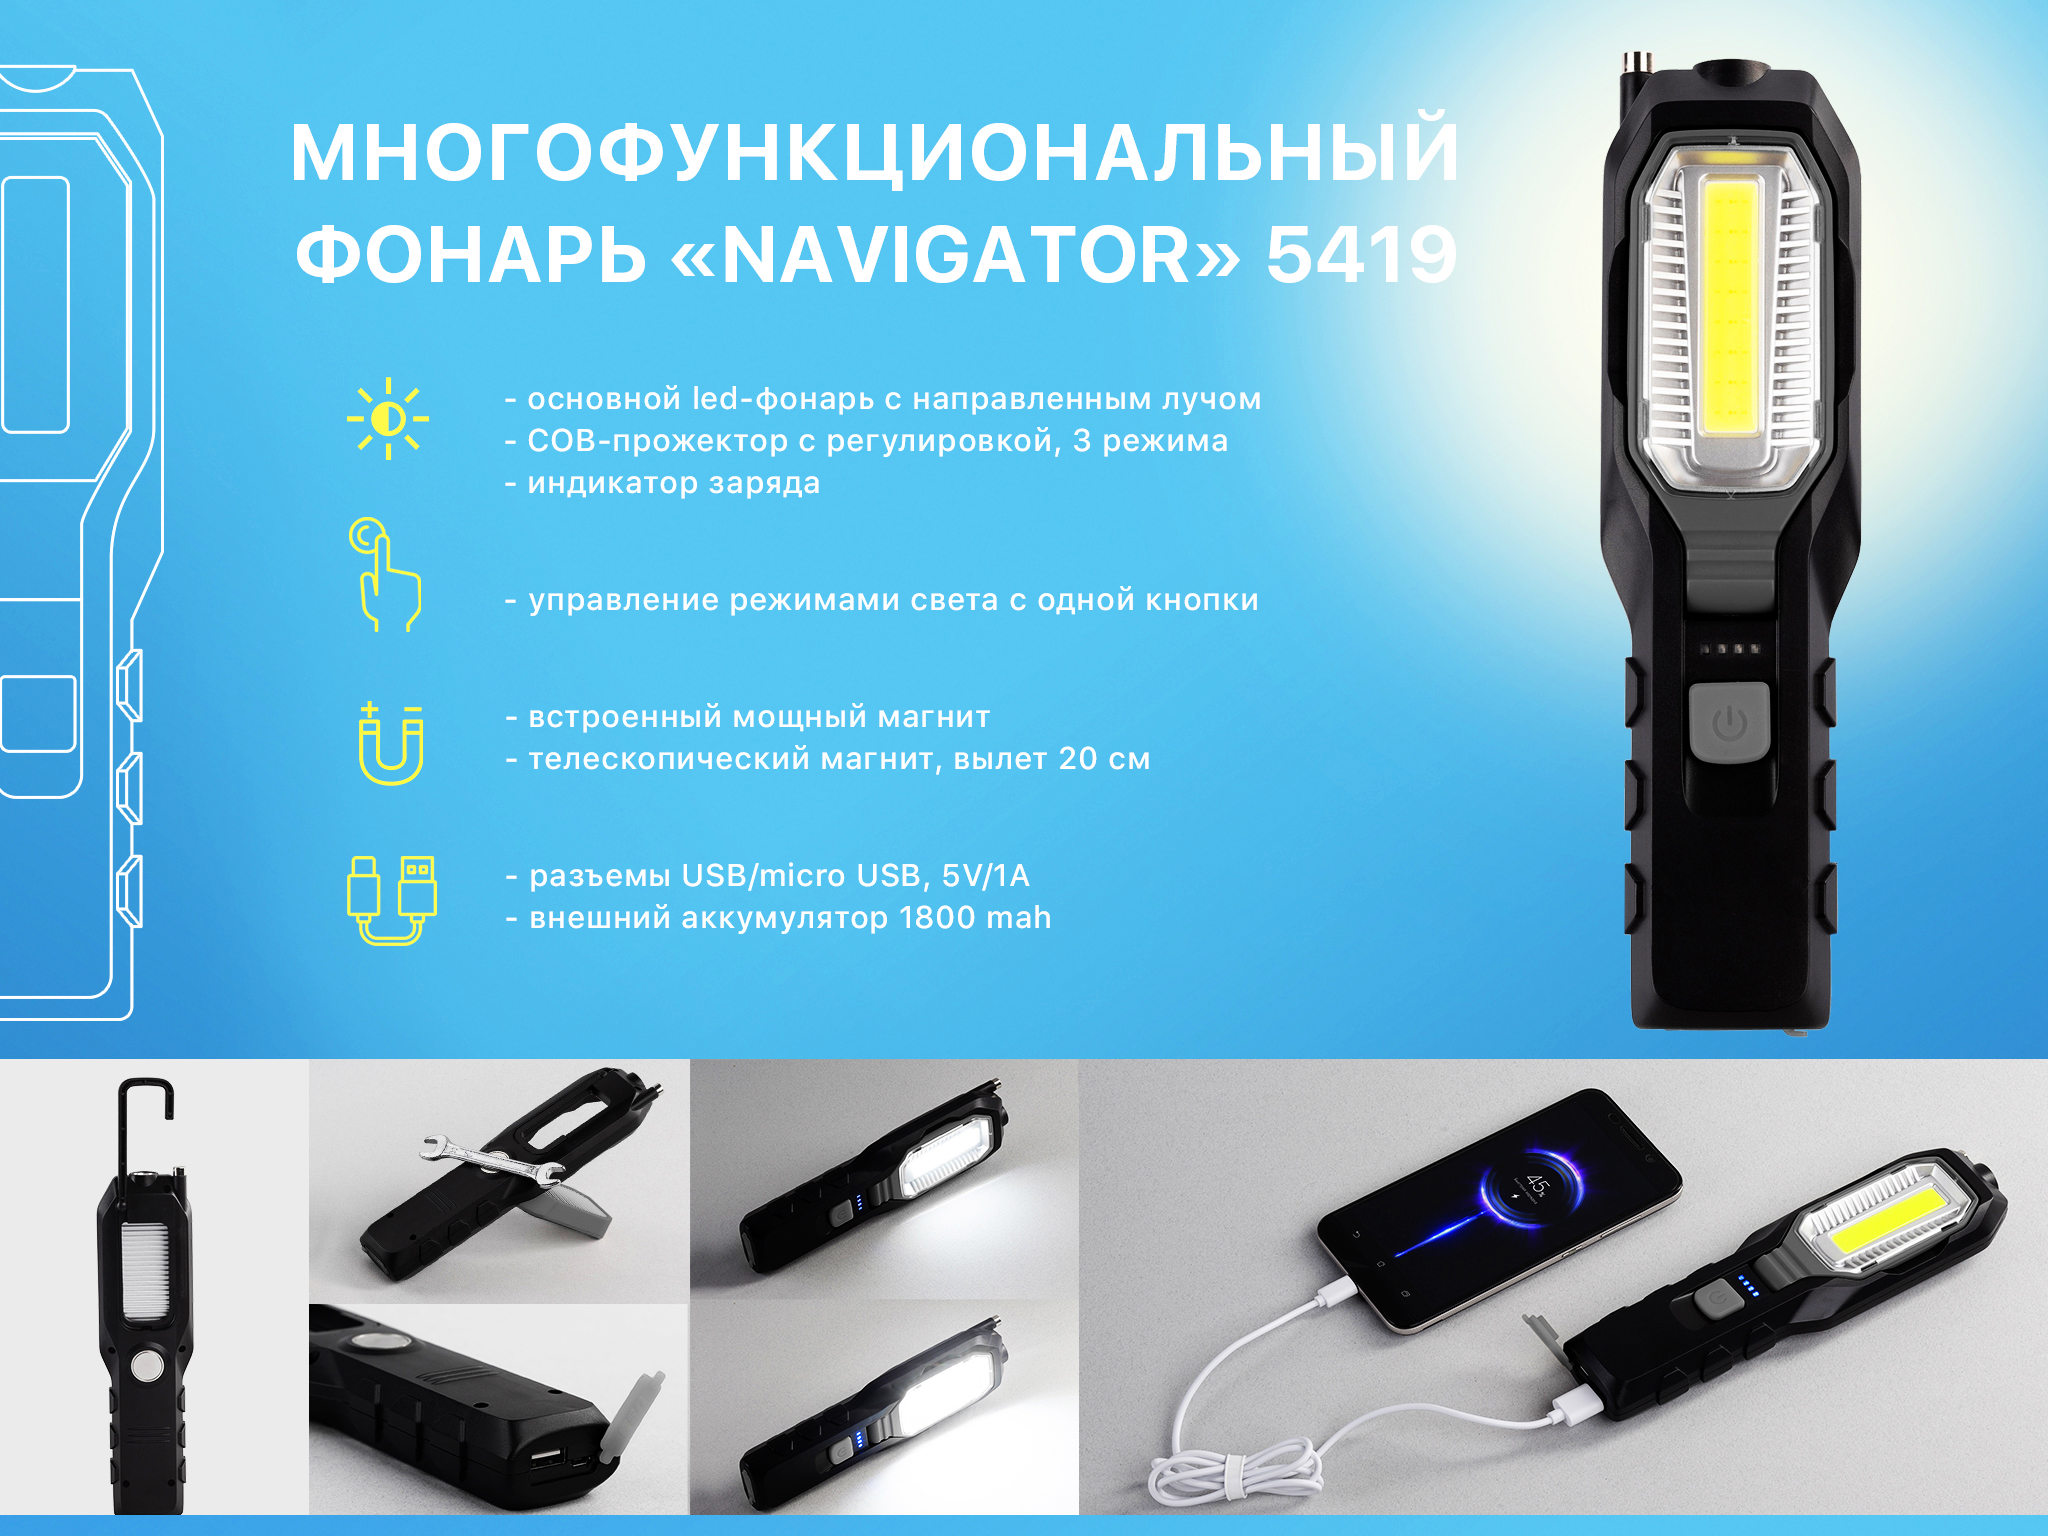 Многофункциональный фонарь "Navigator" с аккумулятором 1800 mAh